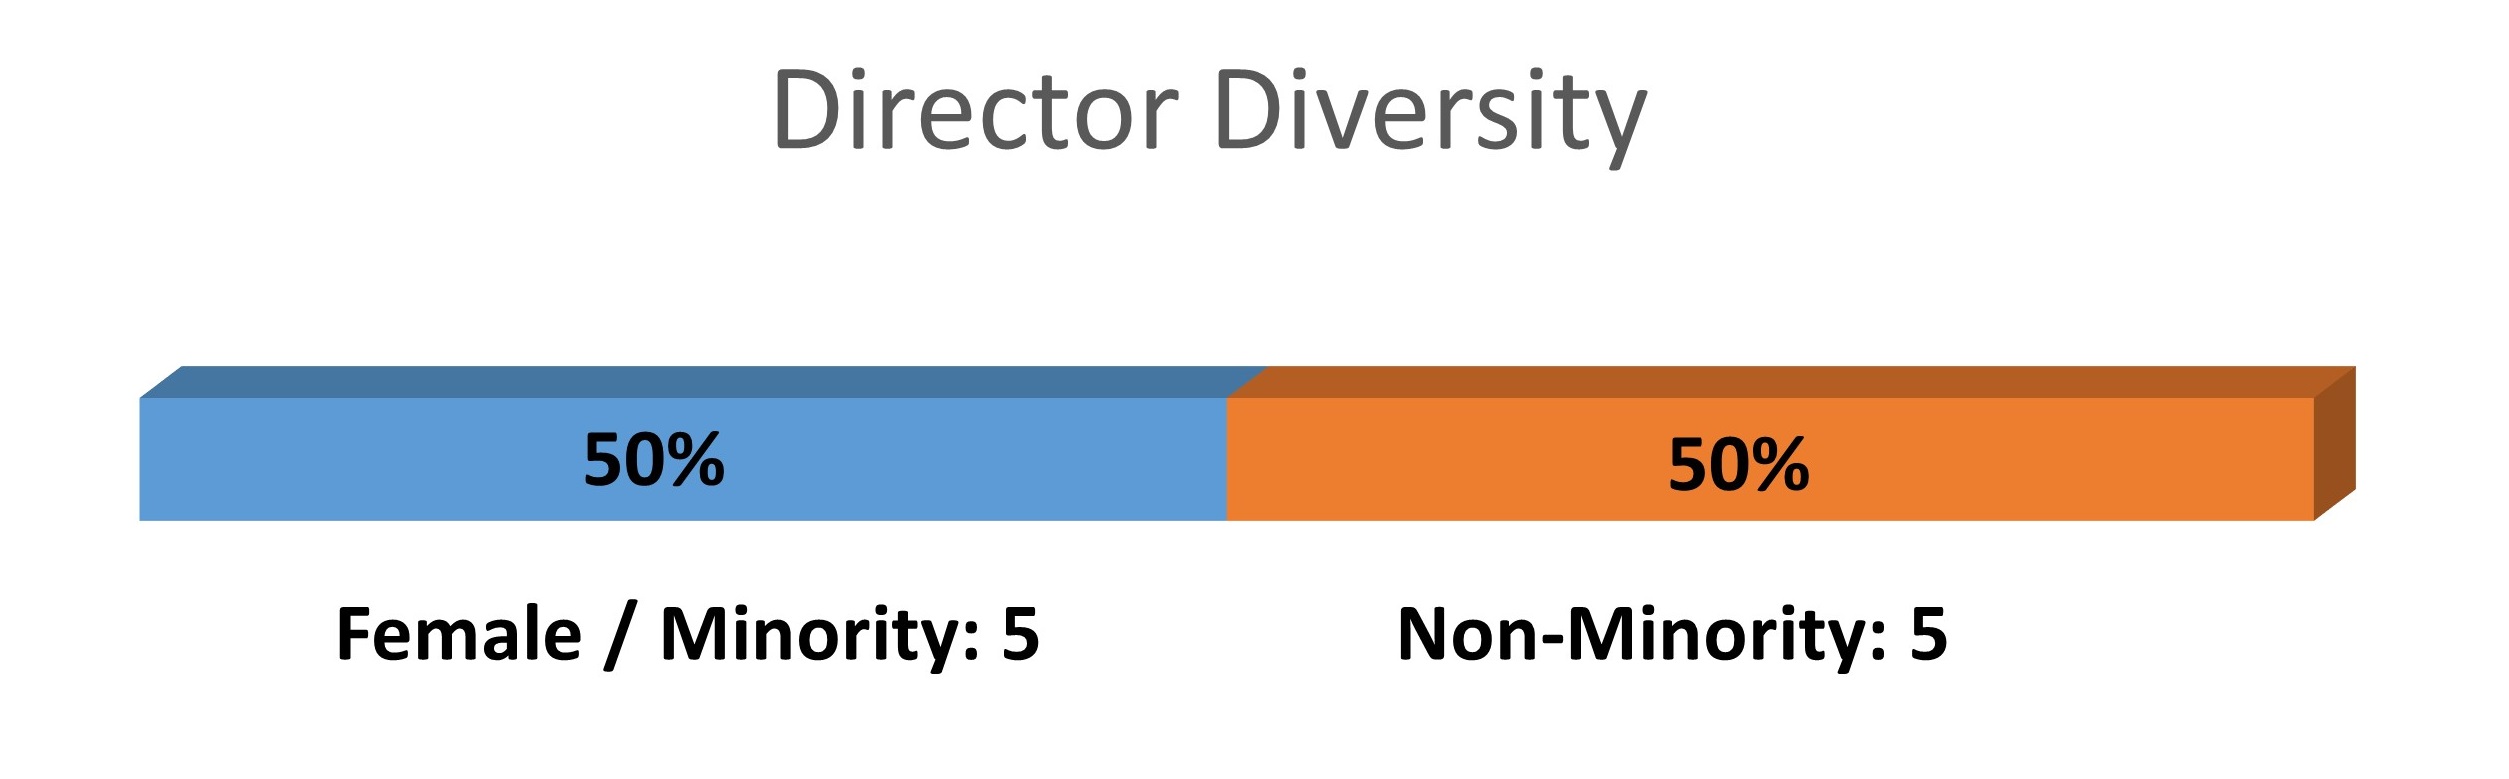 directordiversity2017.jpg